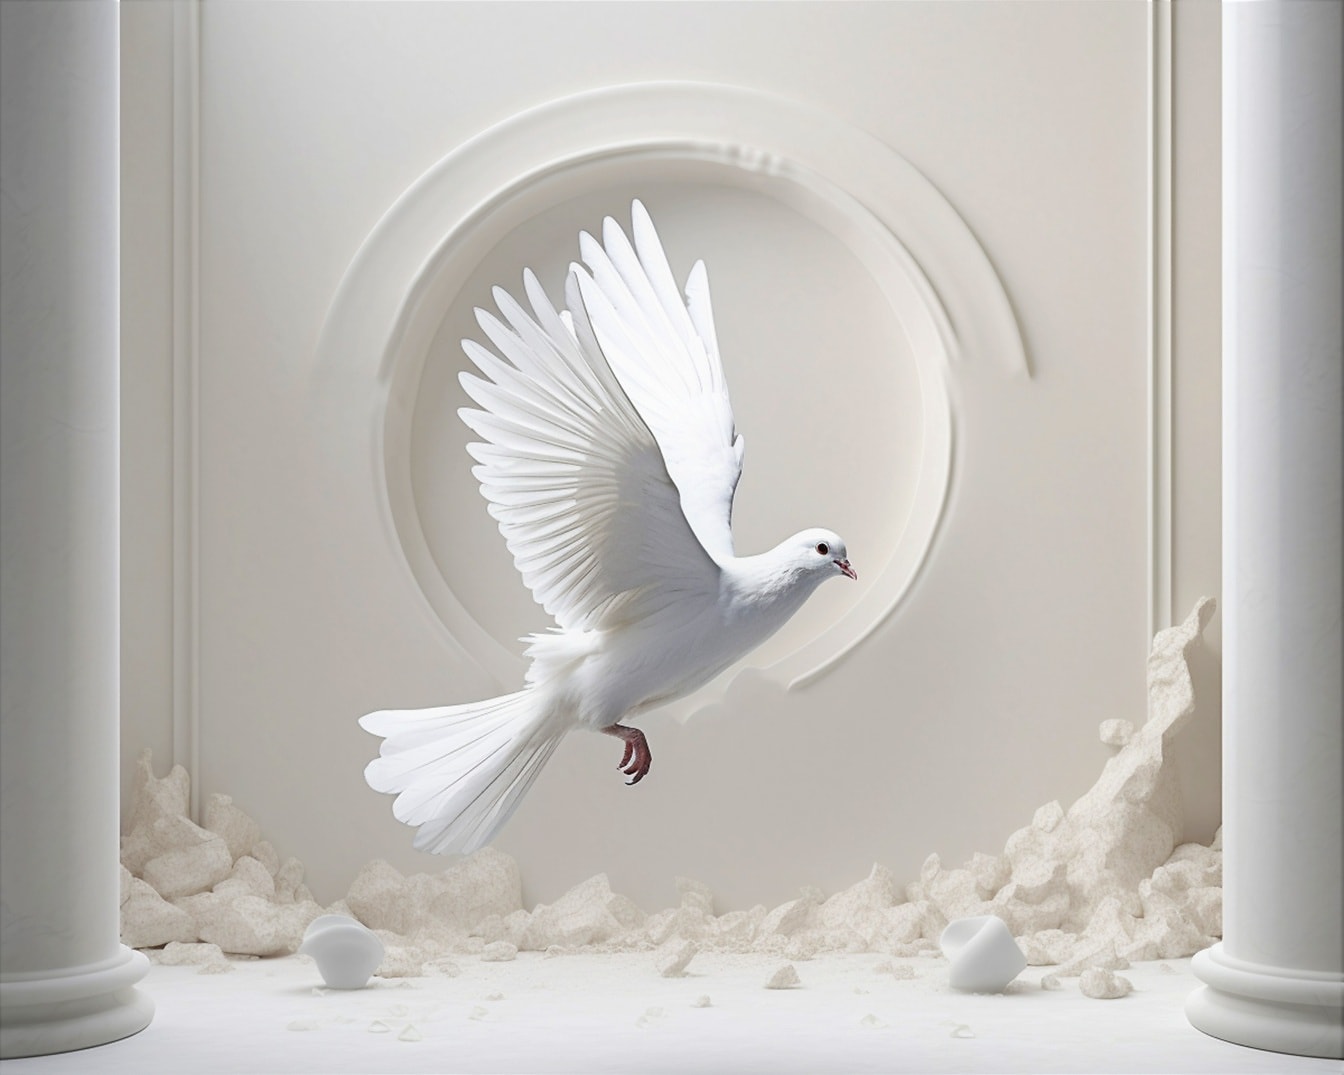 Biely holub lietajúci v opustenej miestnosti